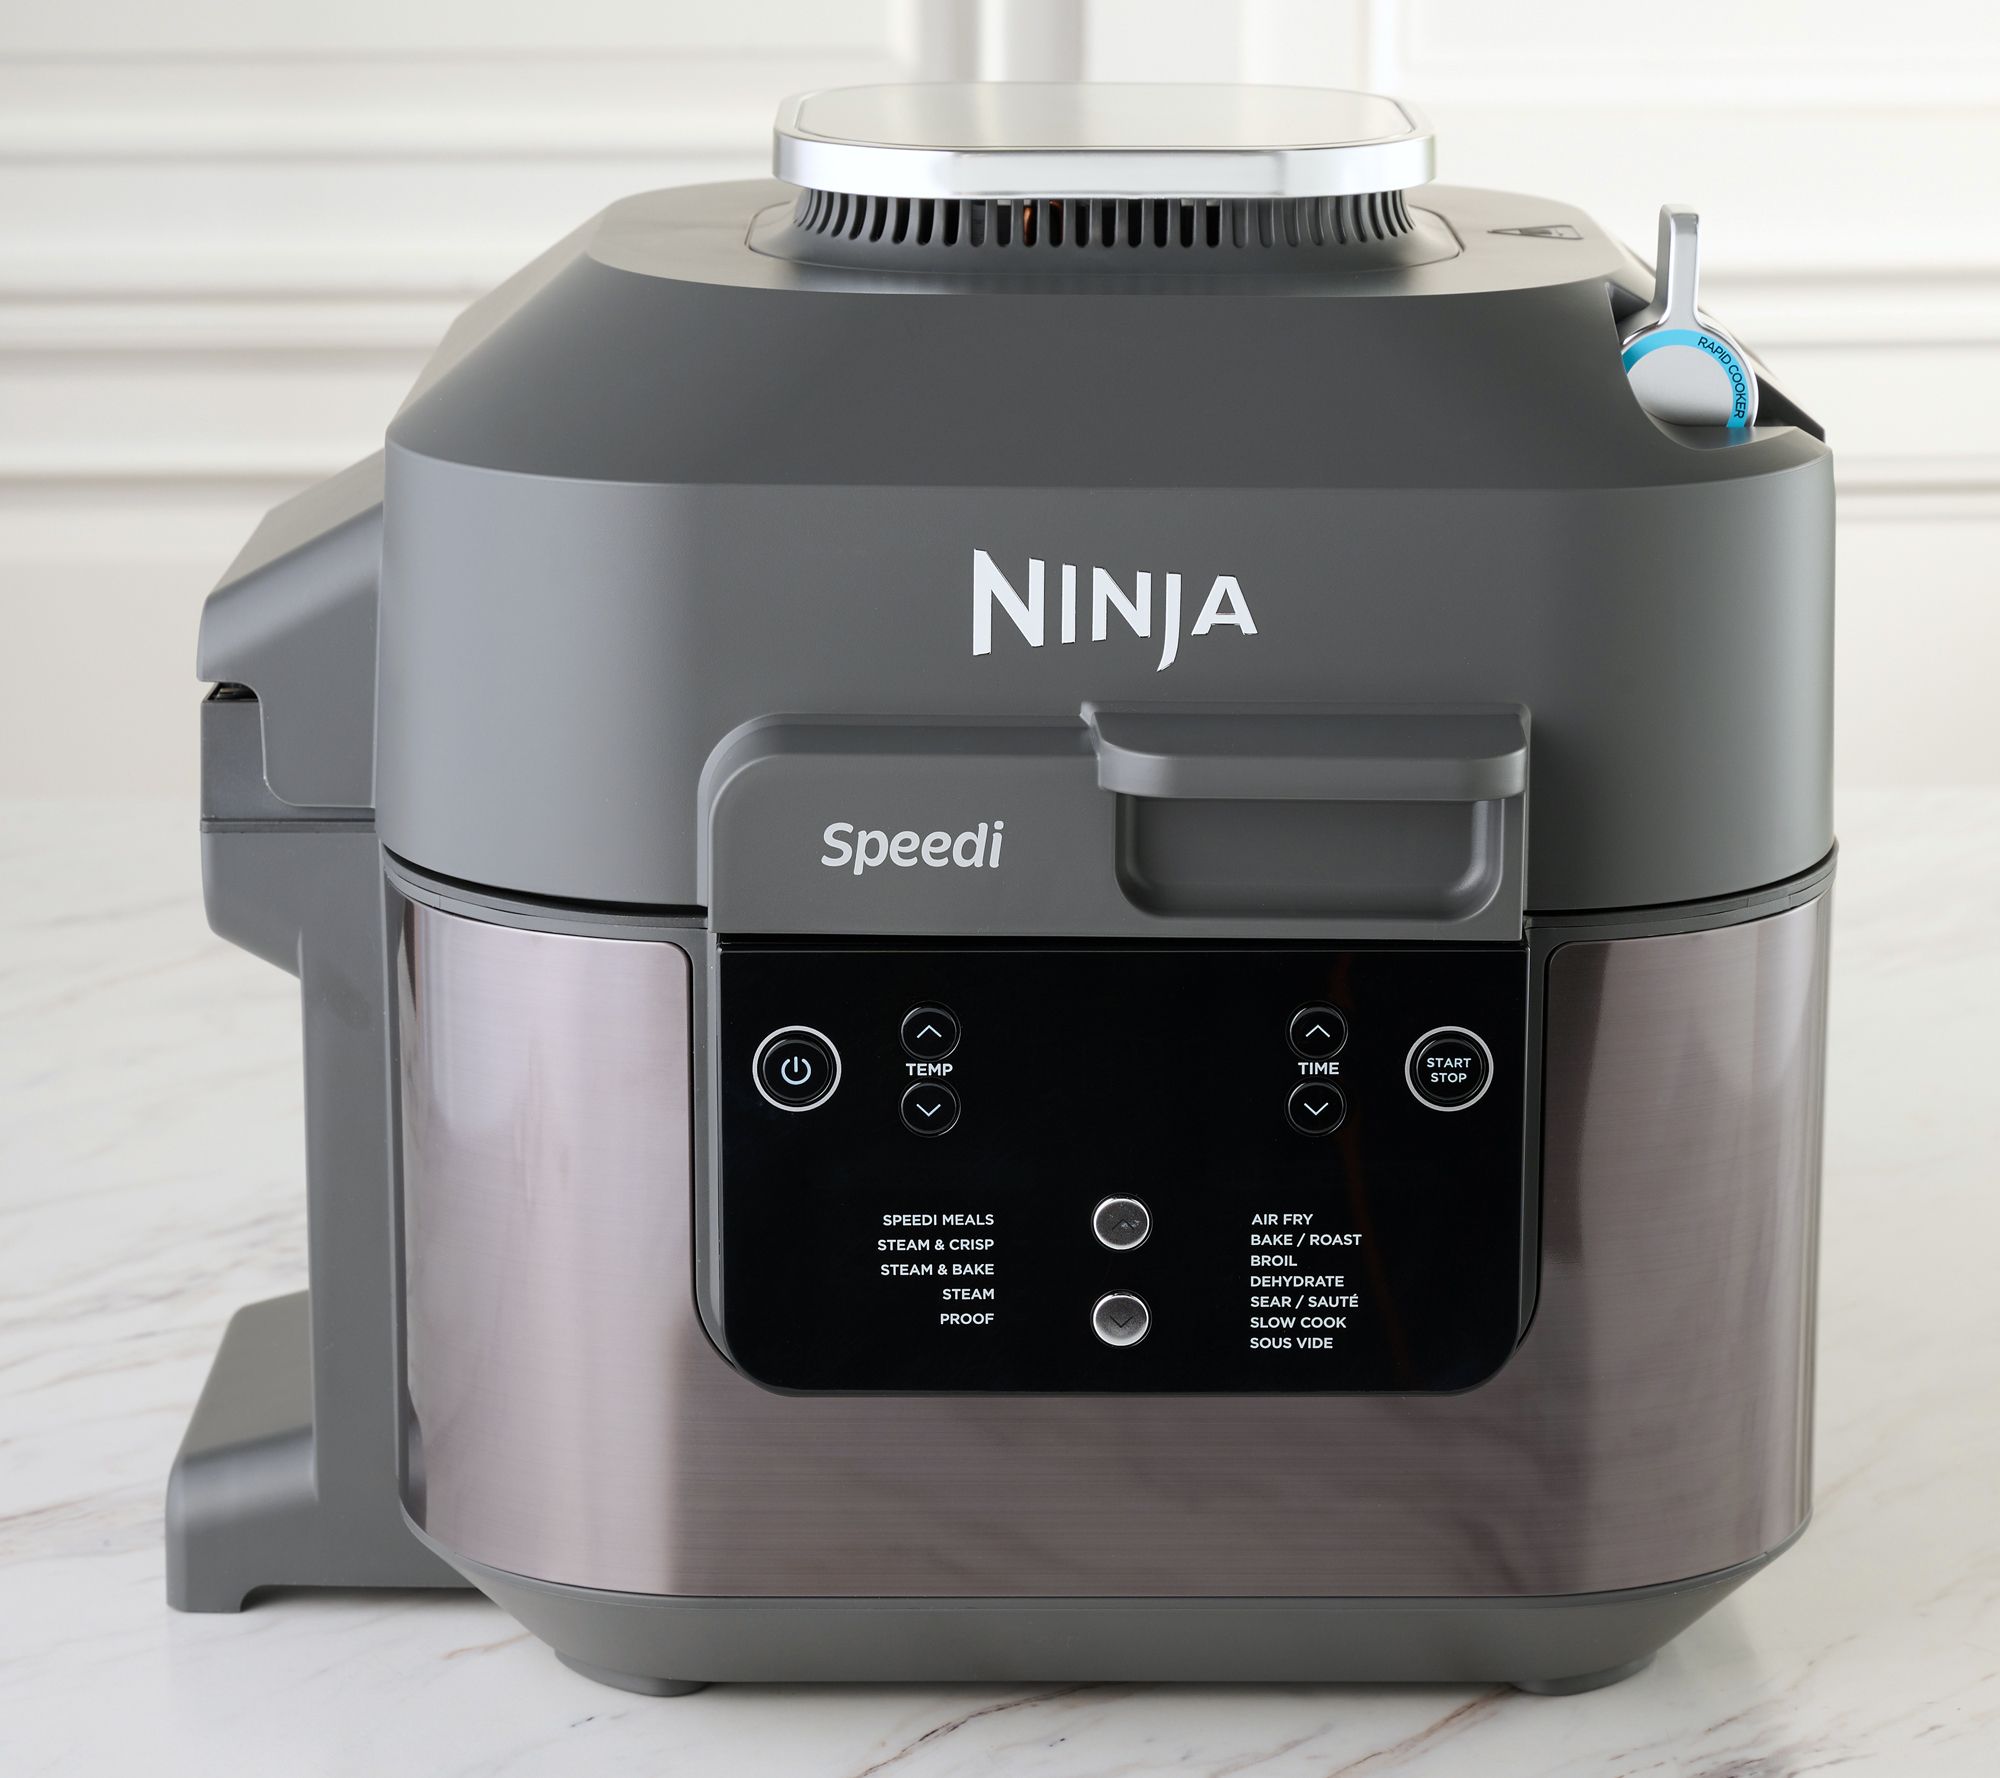 Ninja Speedi 10-in-1 Rapid Cooker: First-look review - Review